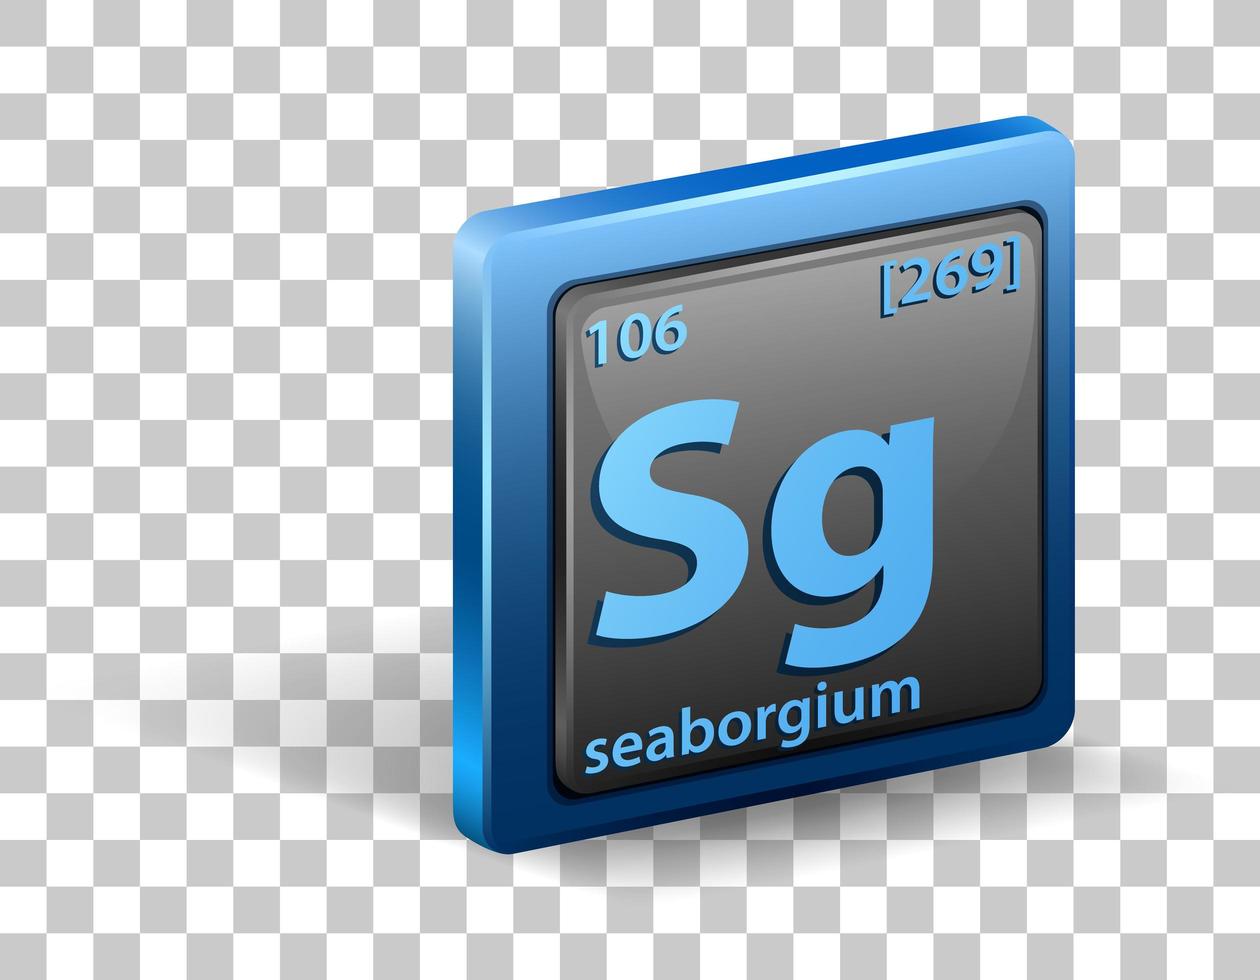 elemento chimico seaborgio. simbolo chimico con numero atomico e massa atomica. vettore